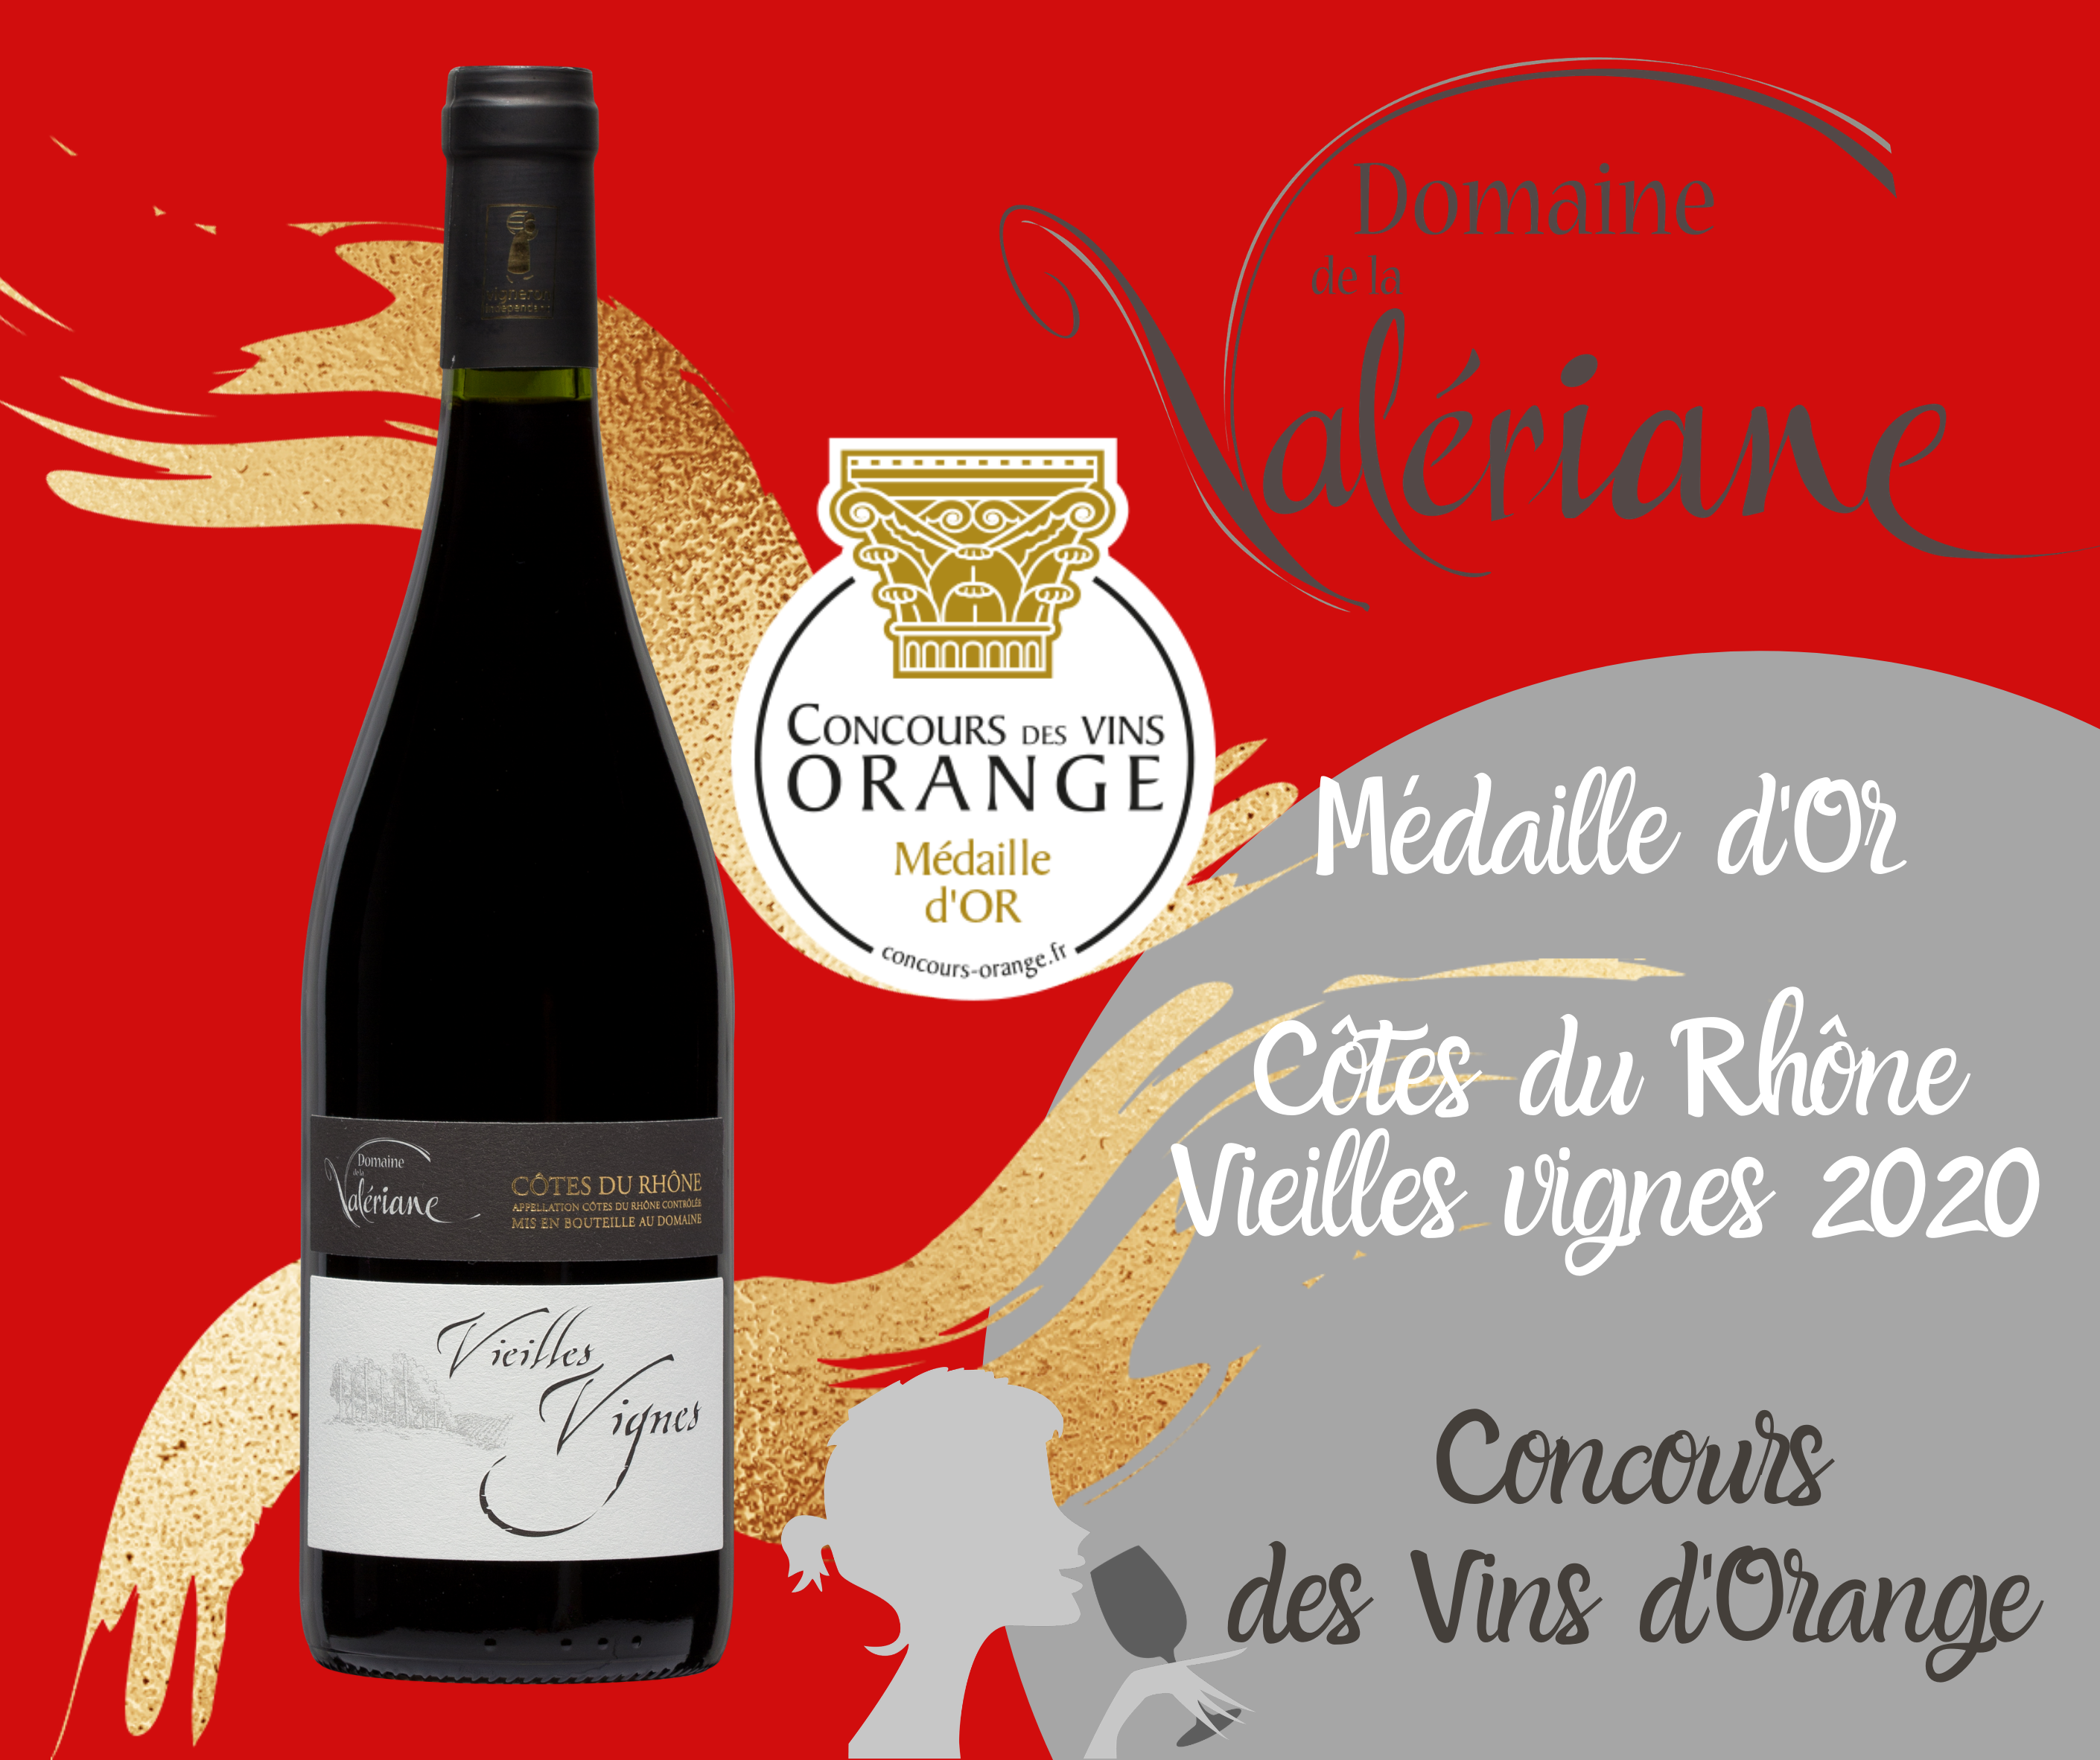 Notre Côtes du Rhône rouge Vieilles Vignes 2020 obtient une Médaille d'Or au Concours des Vins d'Orange !